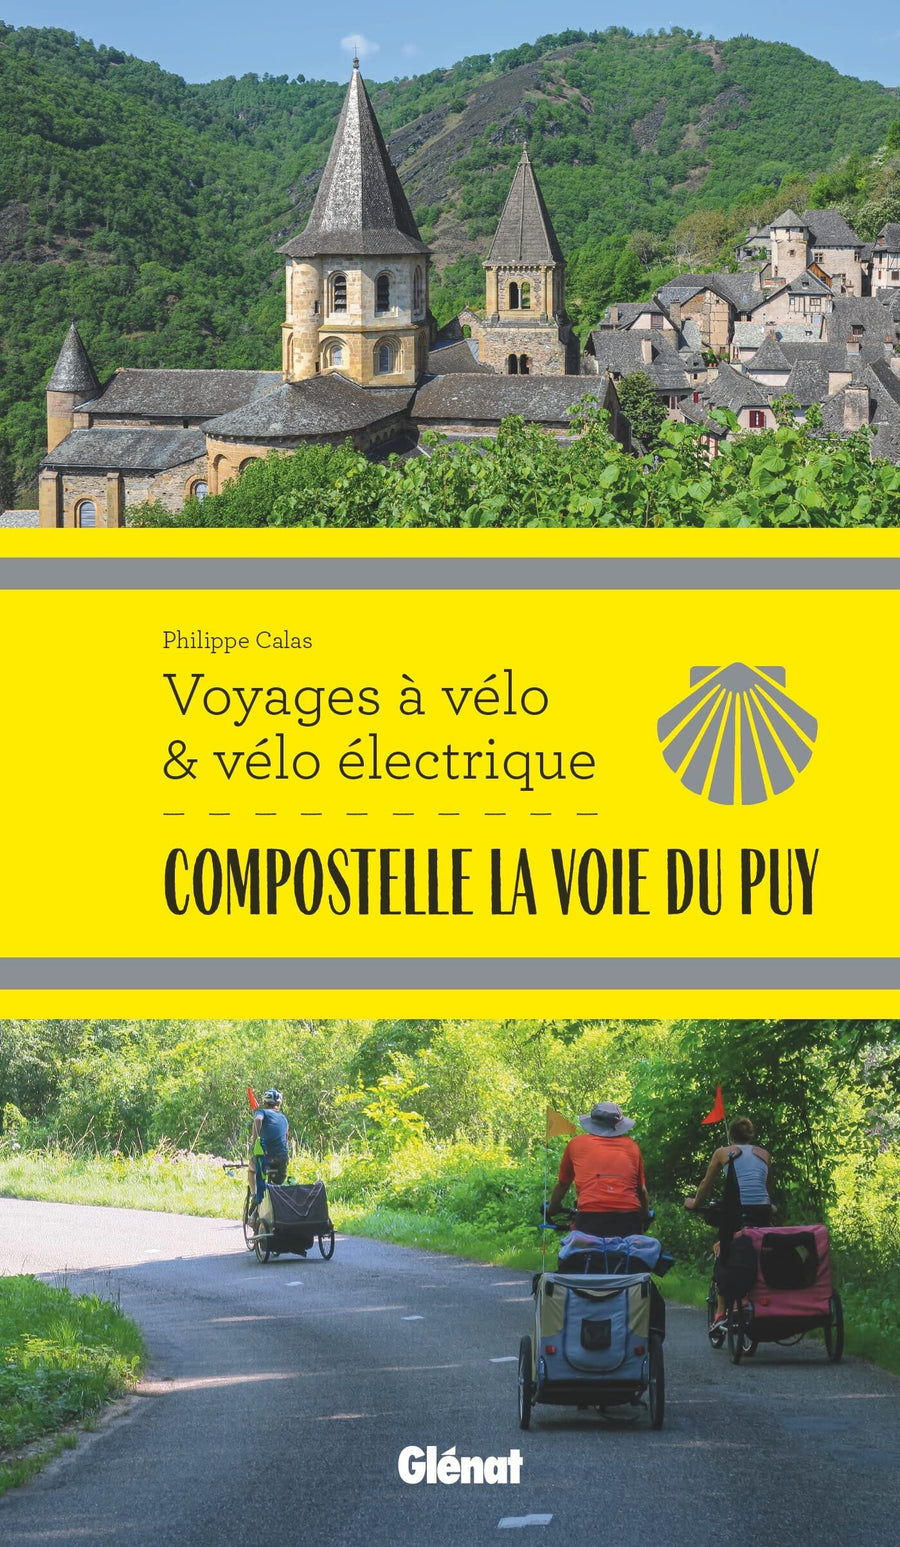 Guide vélo - Voyages à vélo et vélo électrique : Compostelle, La Voie du Puy | Glénat guide vélo Glénat 